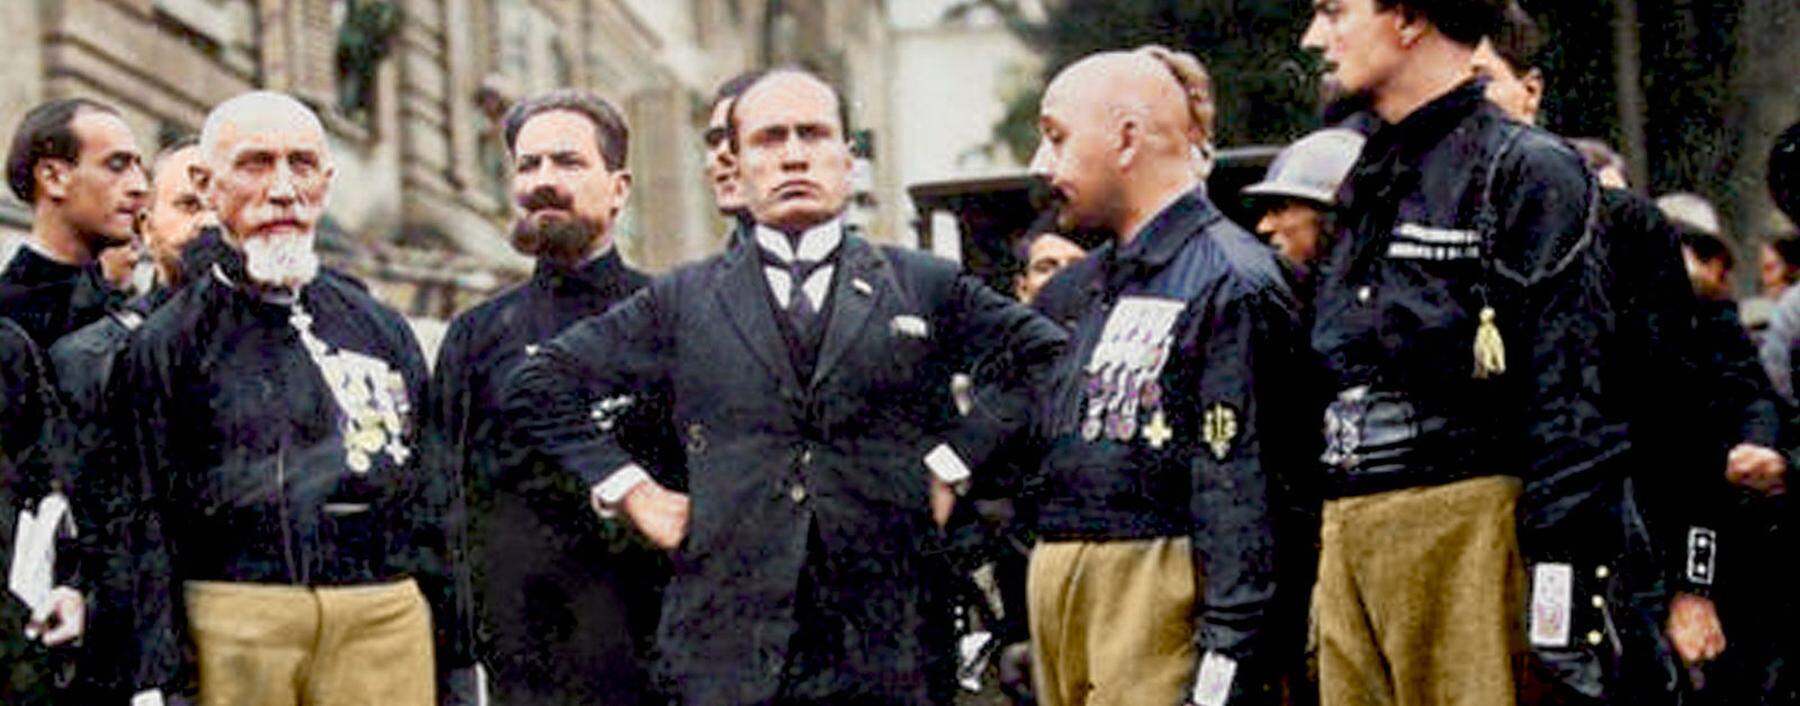 Mussolini, der Meister der martialischen Miene, mit Kampfgenossen am 28. Oktober 1922. 